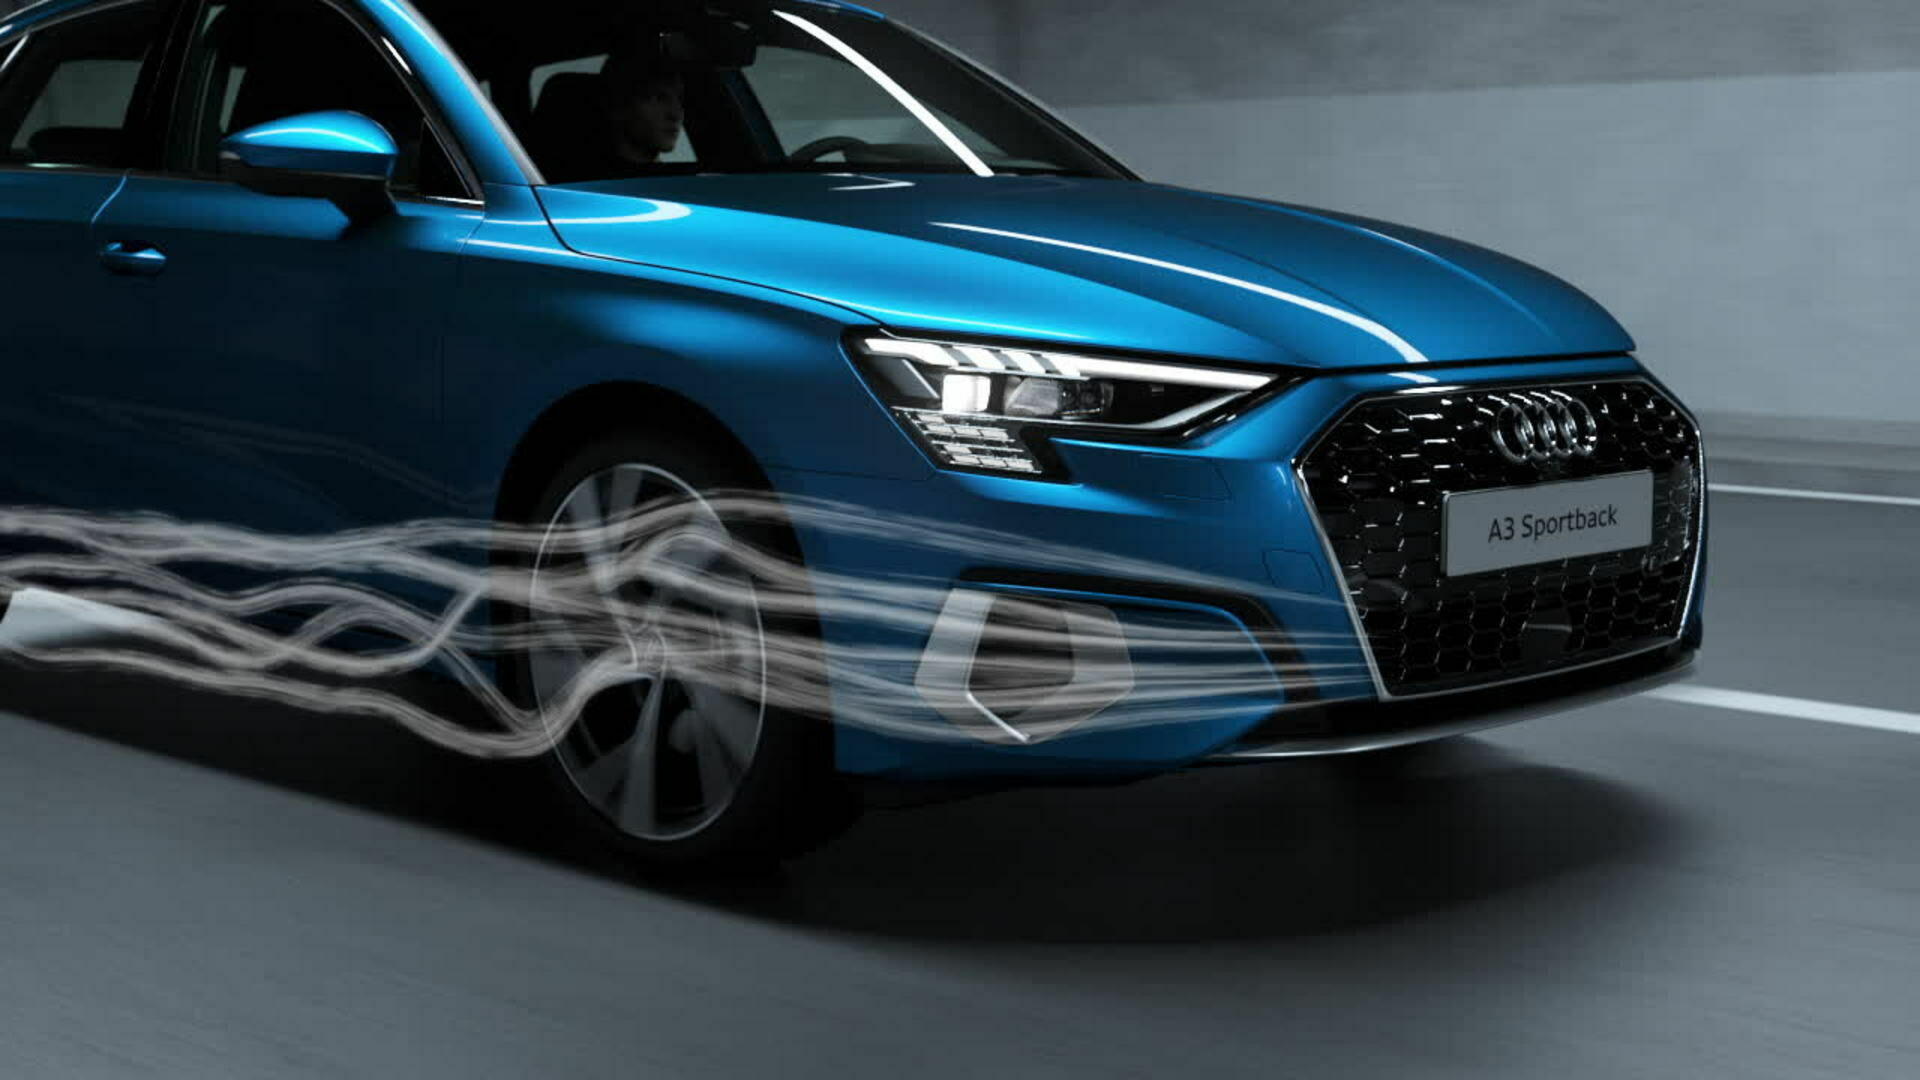 Animation: Audi A3 Sportback – Aerodynamics